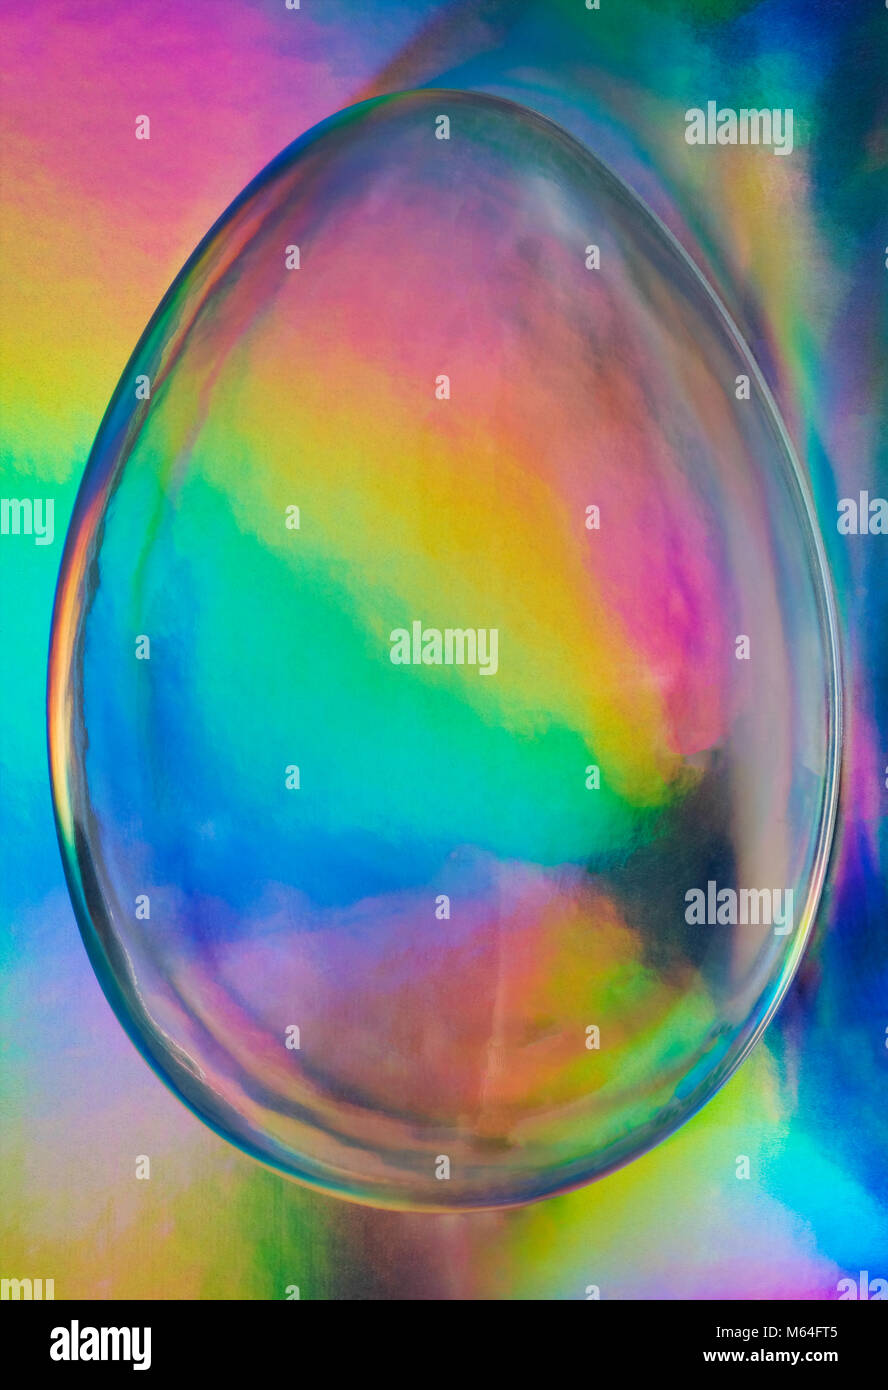 Huevo holográfico, Espectro abstracto holograma vaporwave transparente del huevo de Pascua, a la moda en colores de neón multicolor Foto de stock